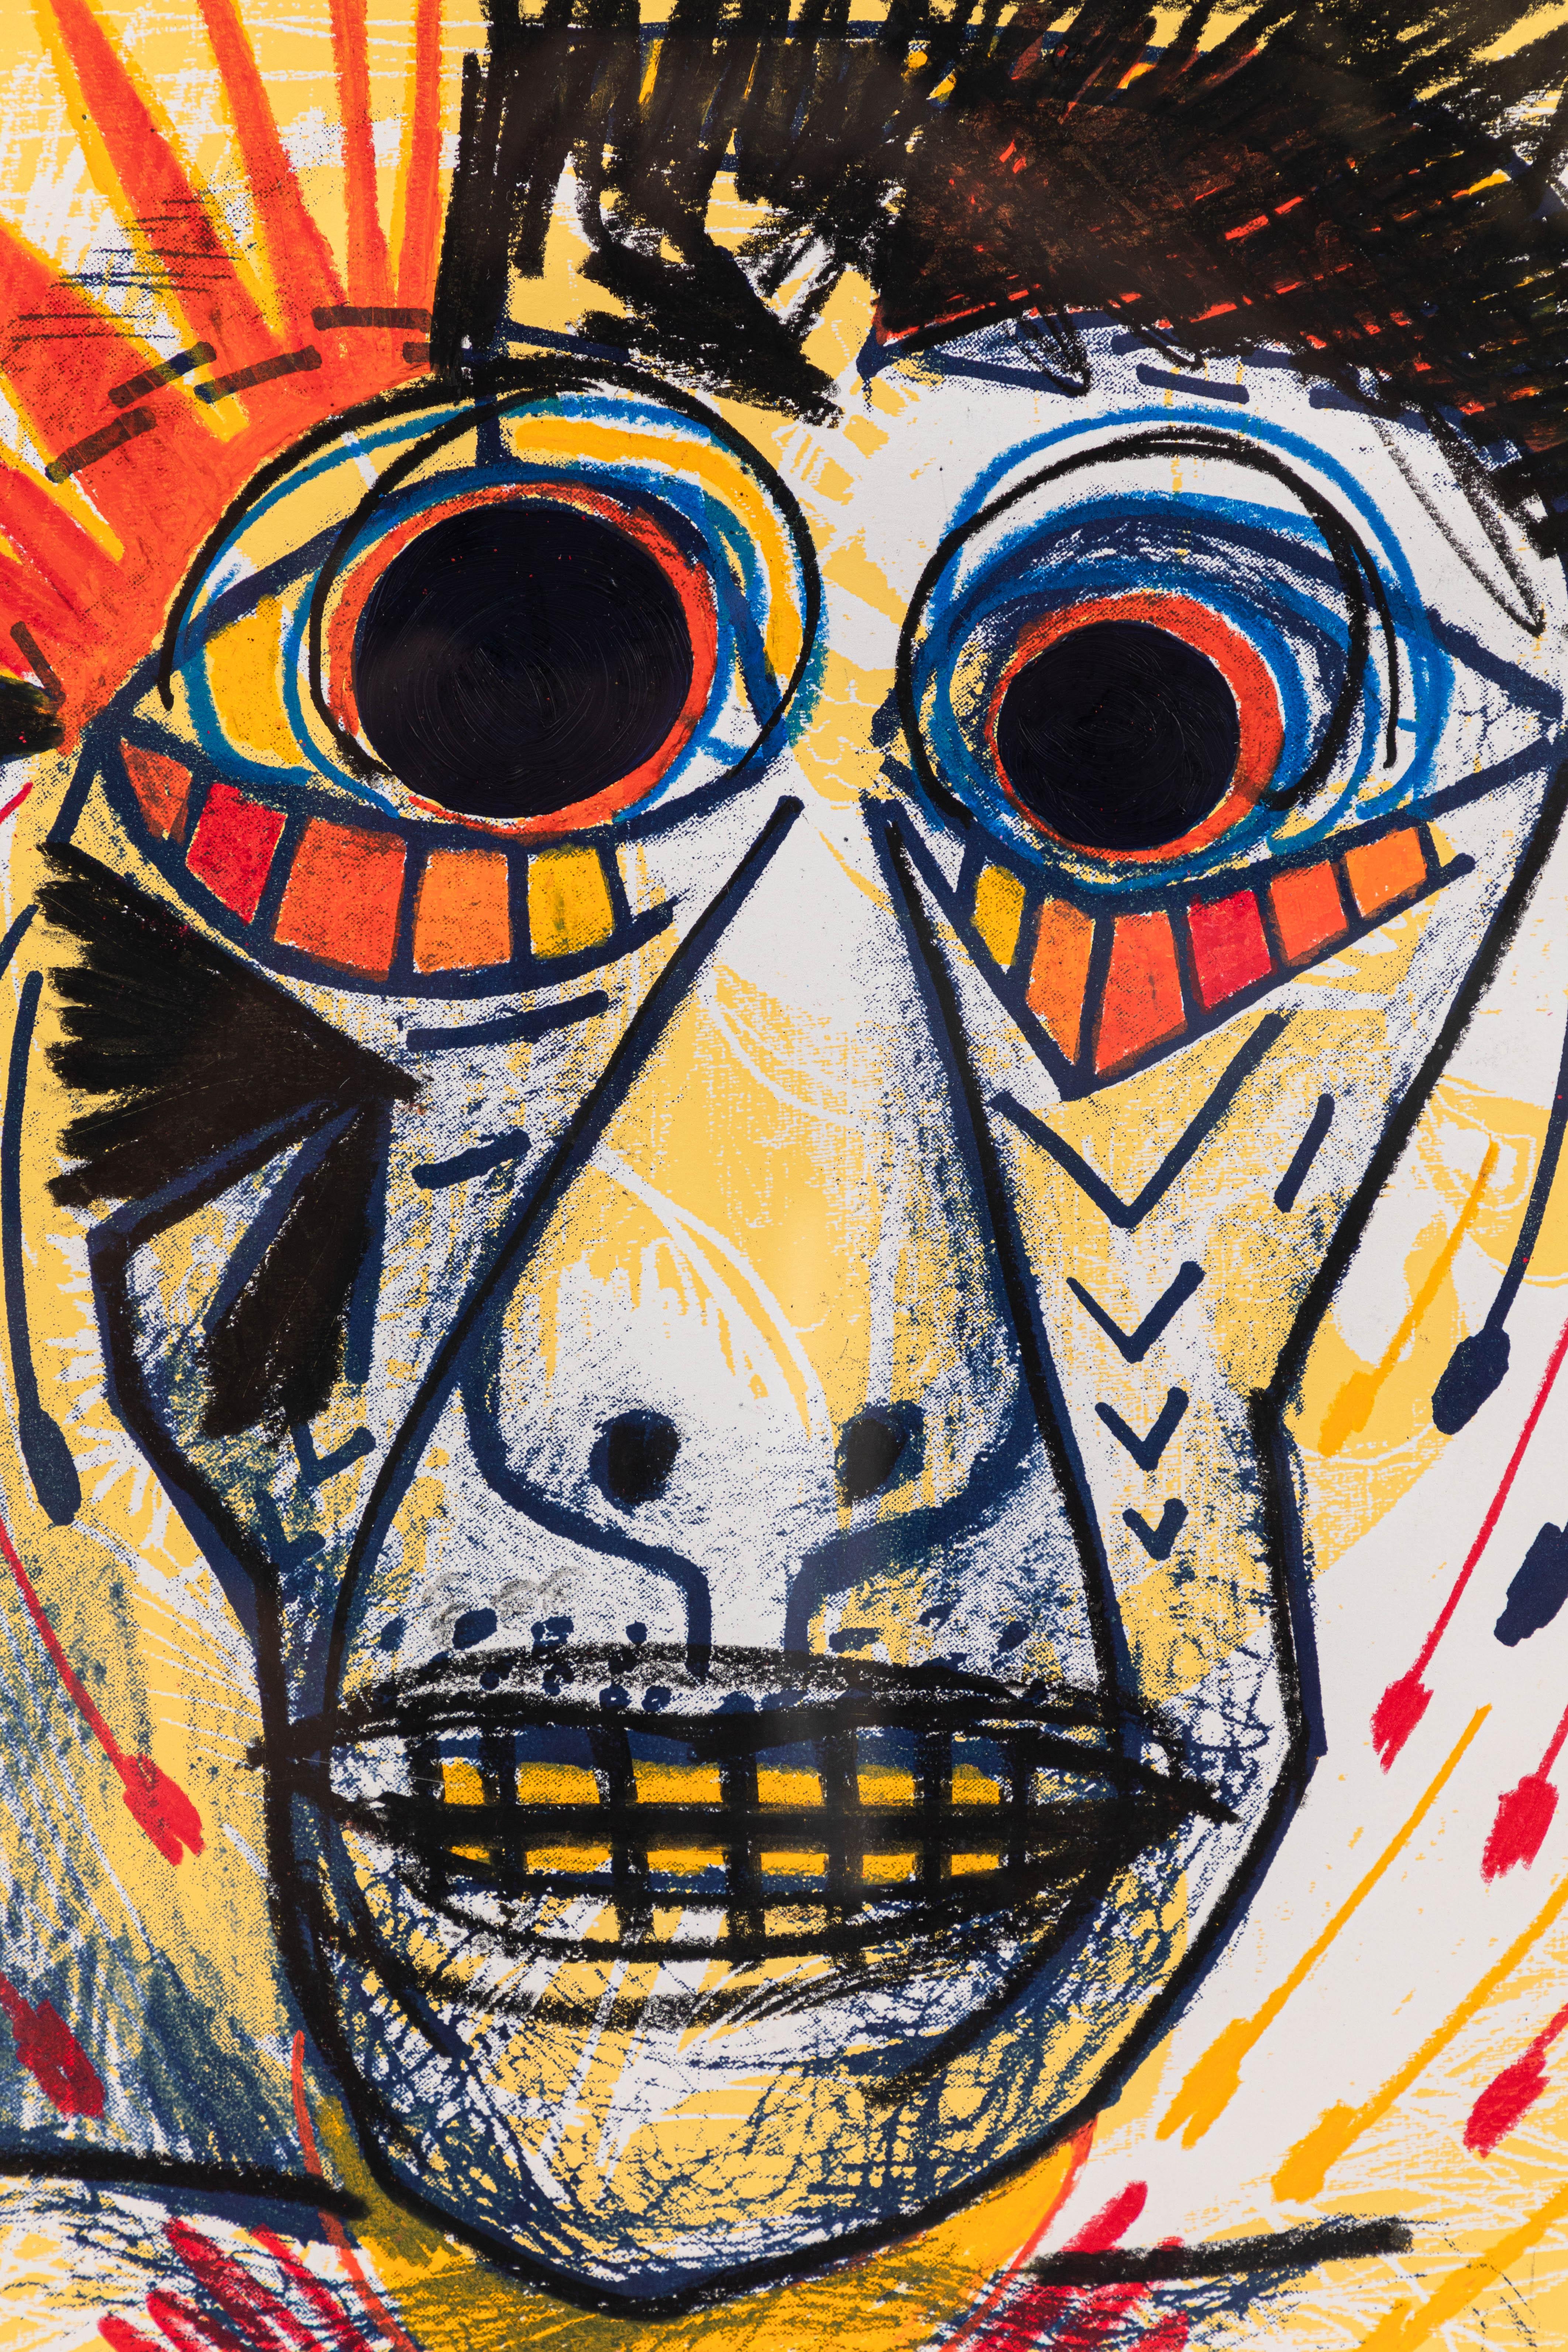 Dessin abstrait graphique et coloré réalisé au pastel à l'huile par l'artiste californien Santos Cortes. Le style rappelle les œuvres de Jean Michel Basquiat ou de Picasso. Nouvellement encadré en bois noir.